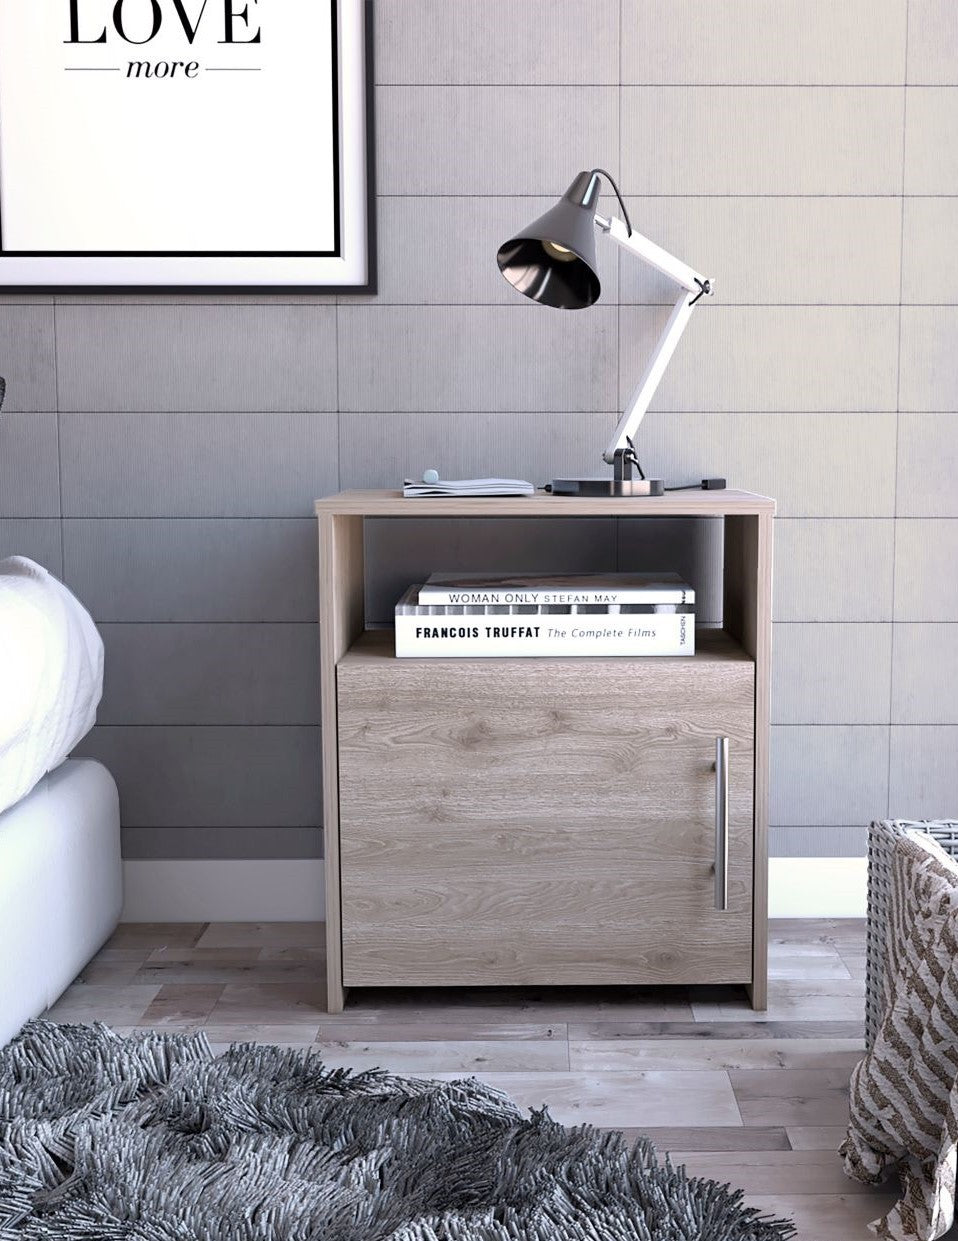 Nightstand, One Shelf, Single Door Cabinet, Metal Handle - Light Gray